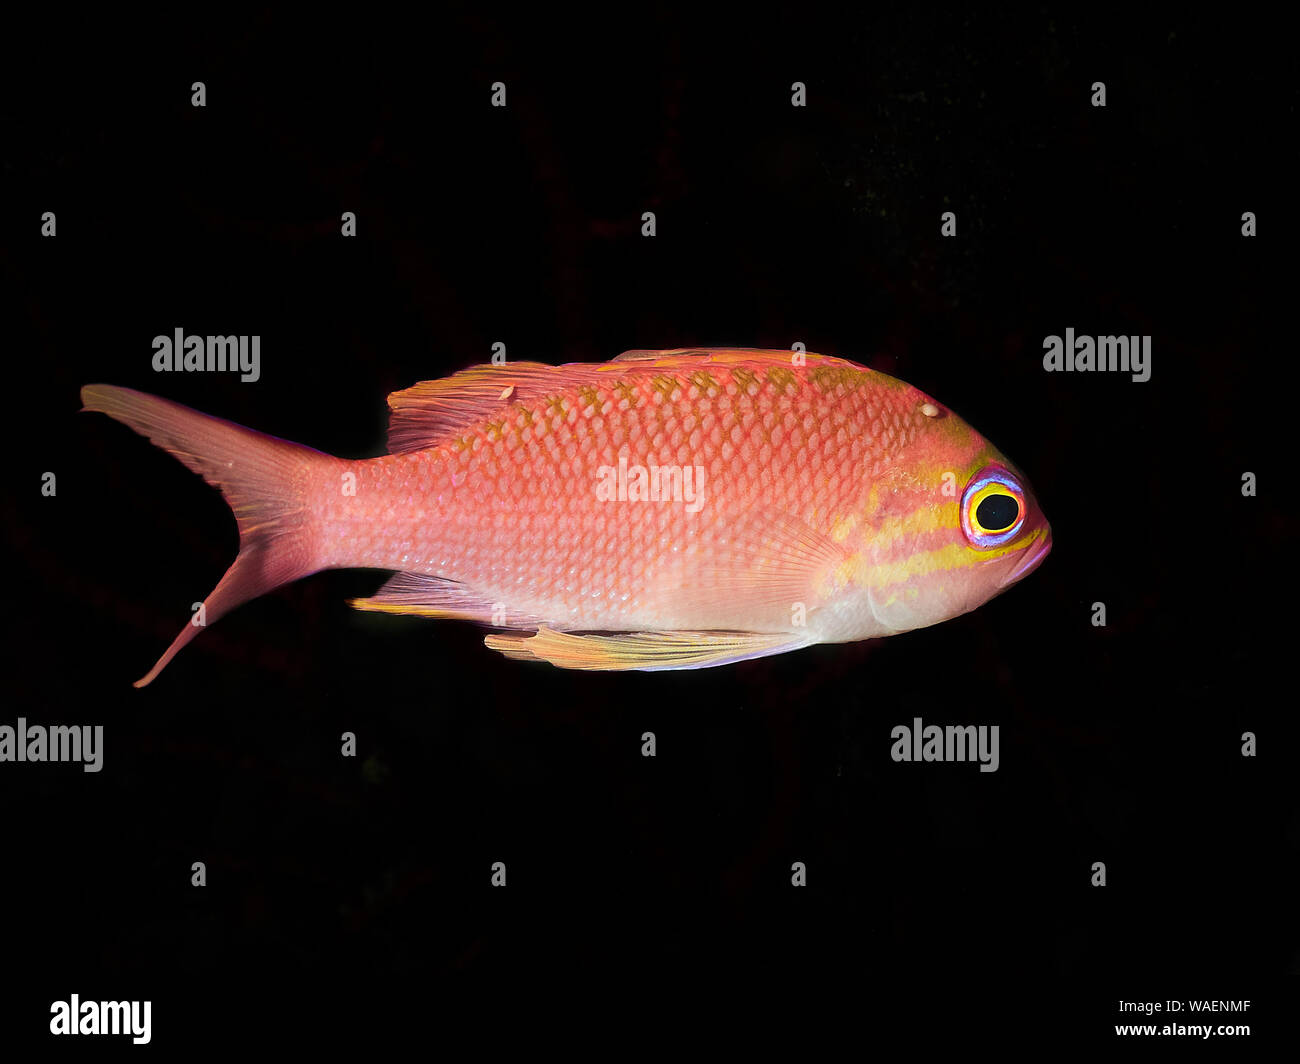 Rosa Fisch auf einem schwarzen Hintergrund Stockfotografie - Alamy